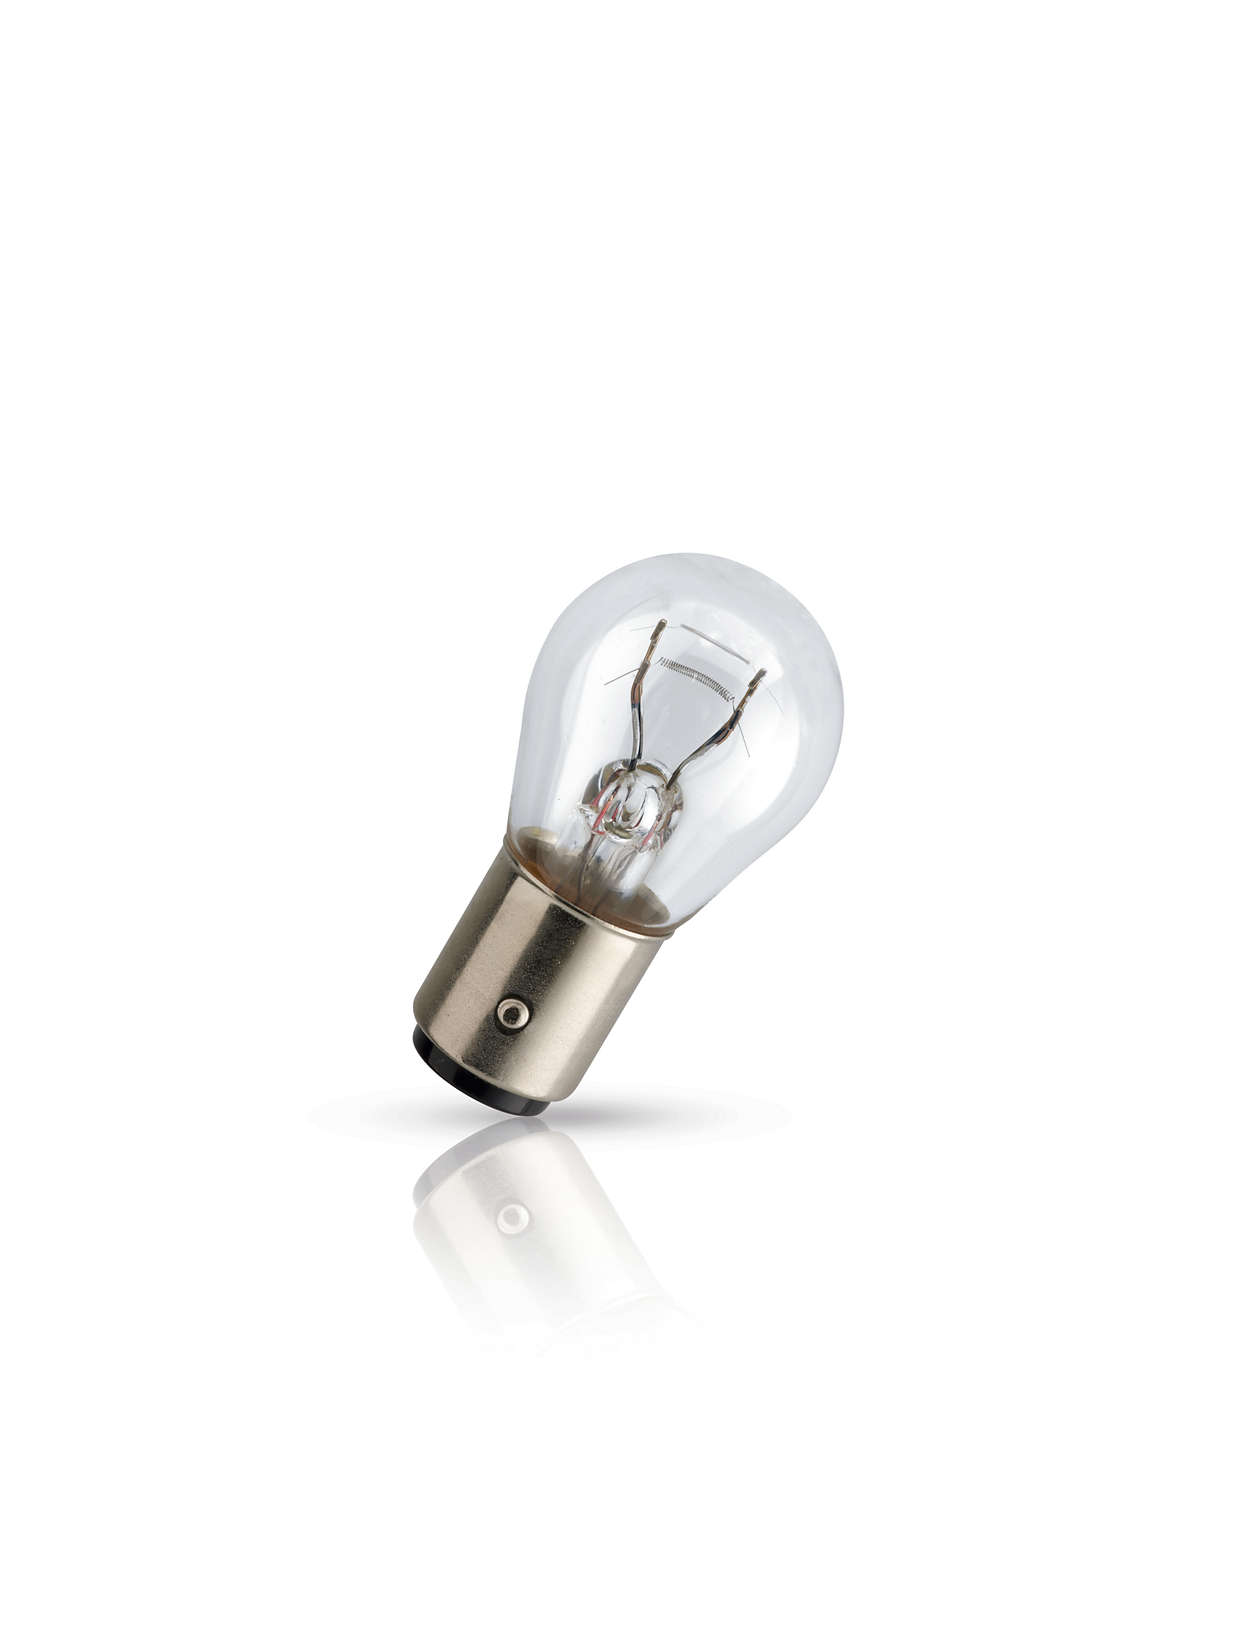 Лампа накаливания' Premium P21/5W' 12В 21/5Вт